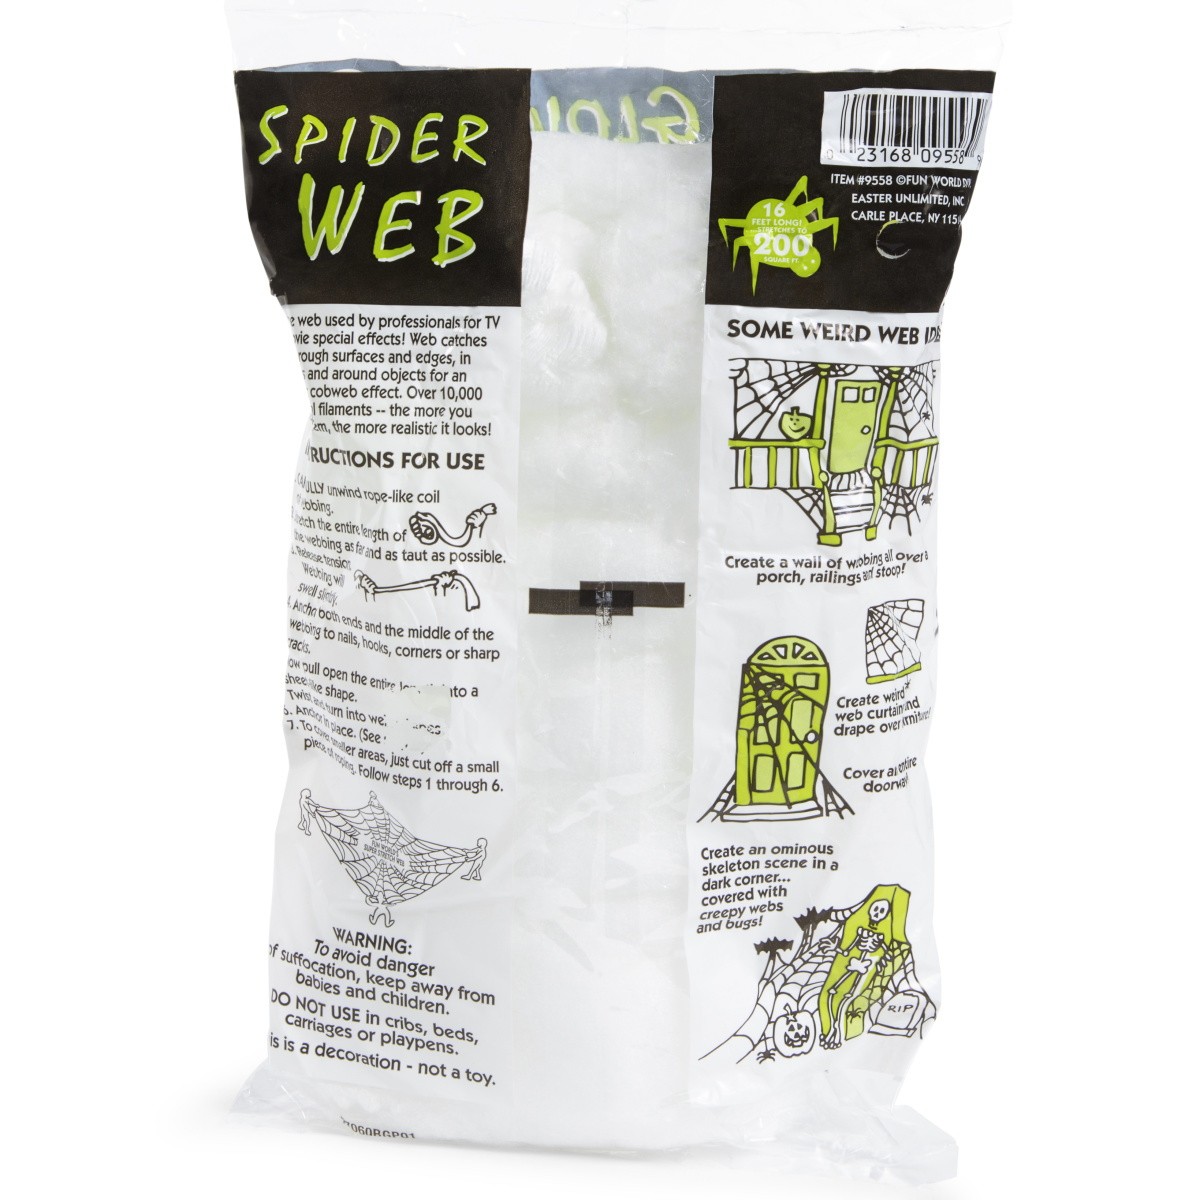 Glow in The Dark Spider Web Decoration 16-Foot